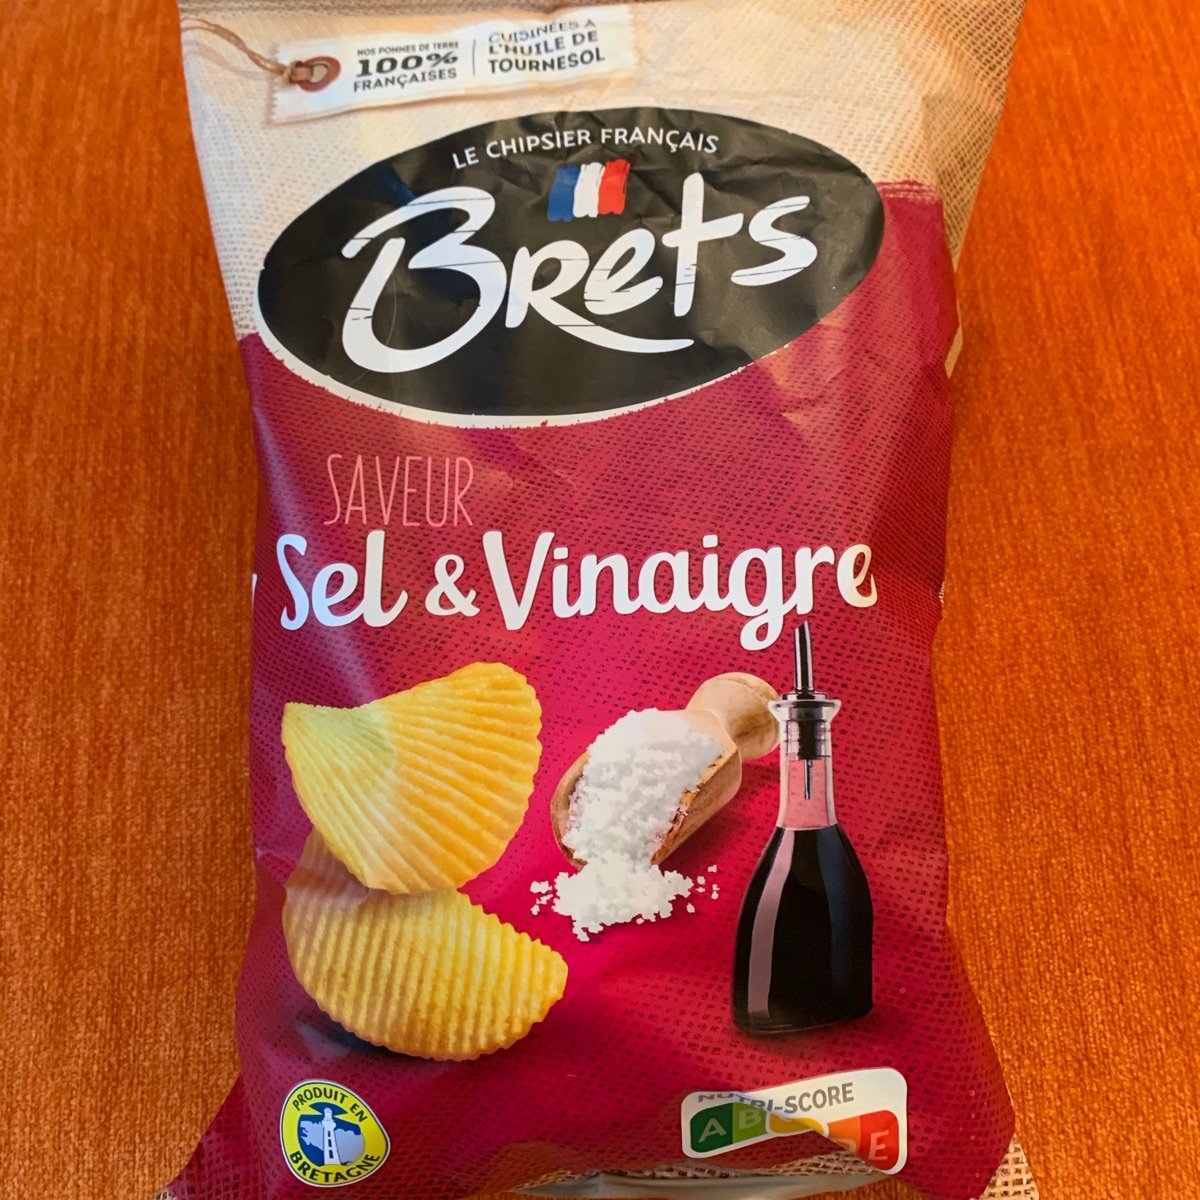 Brets (Le Chipsier Français) Chips saveur sel & vinaigre Review